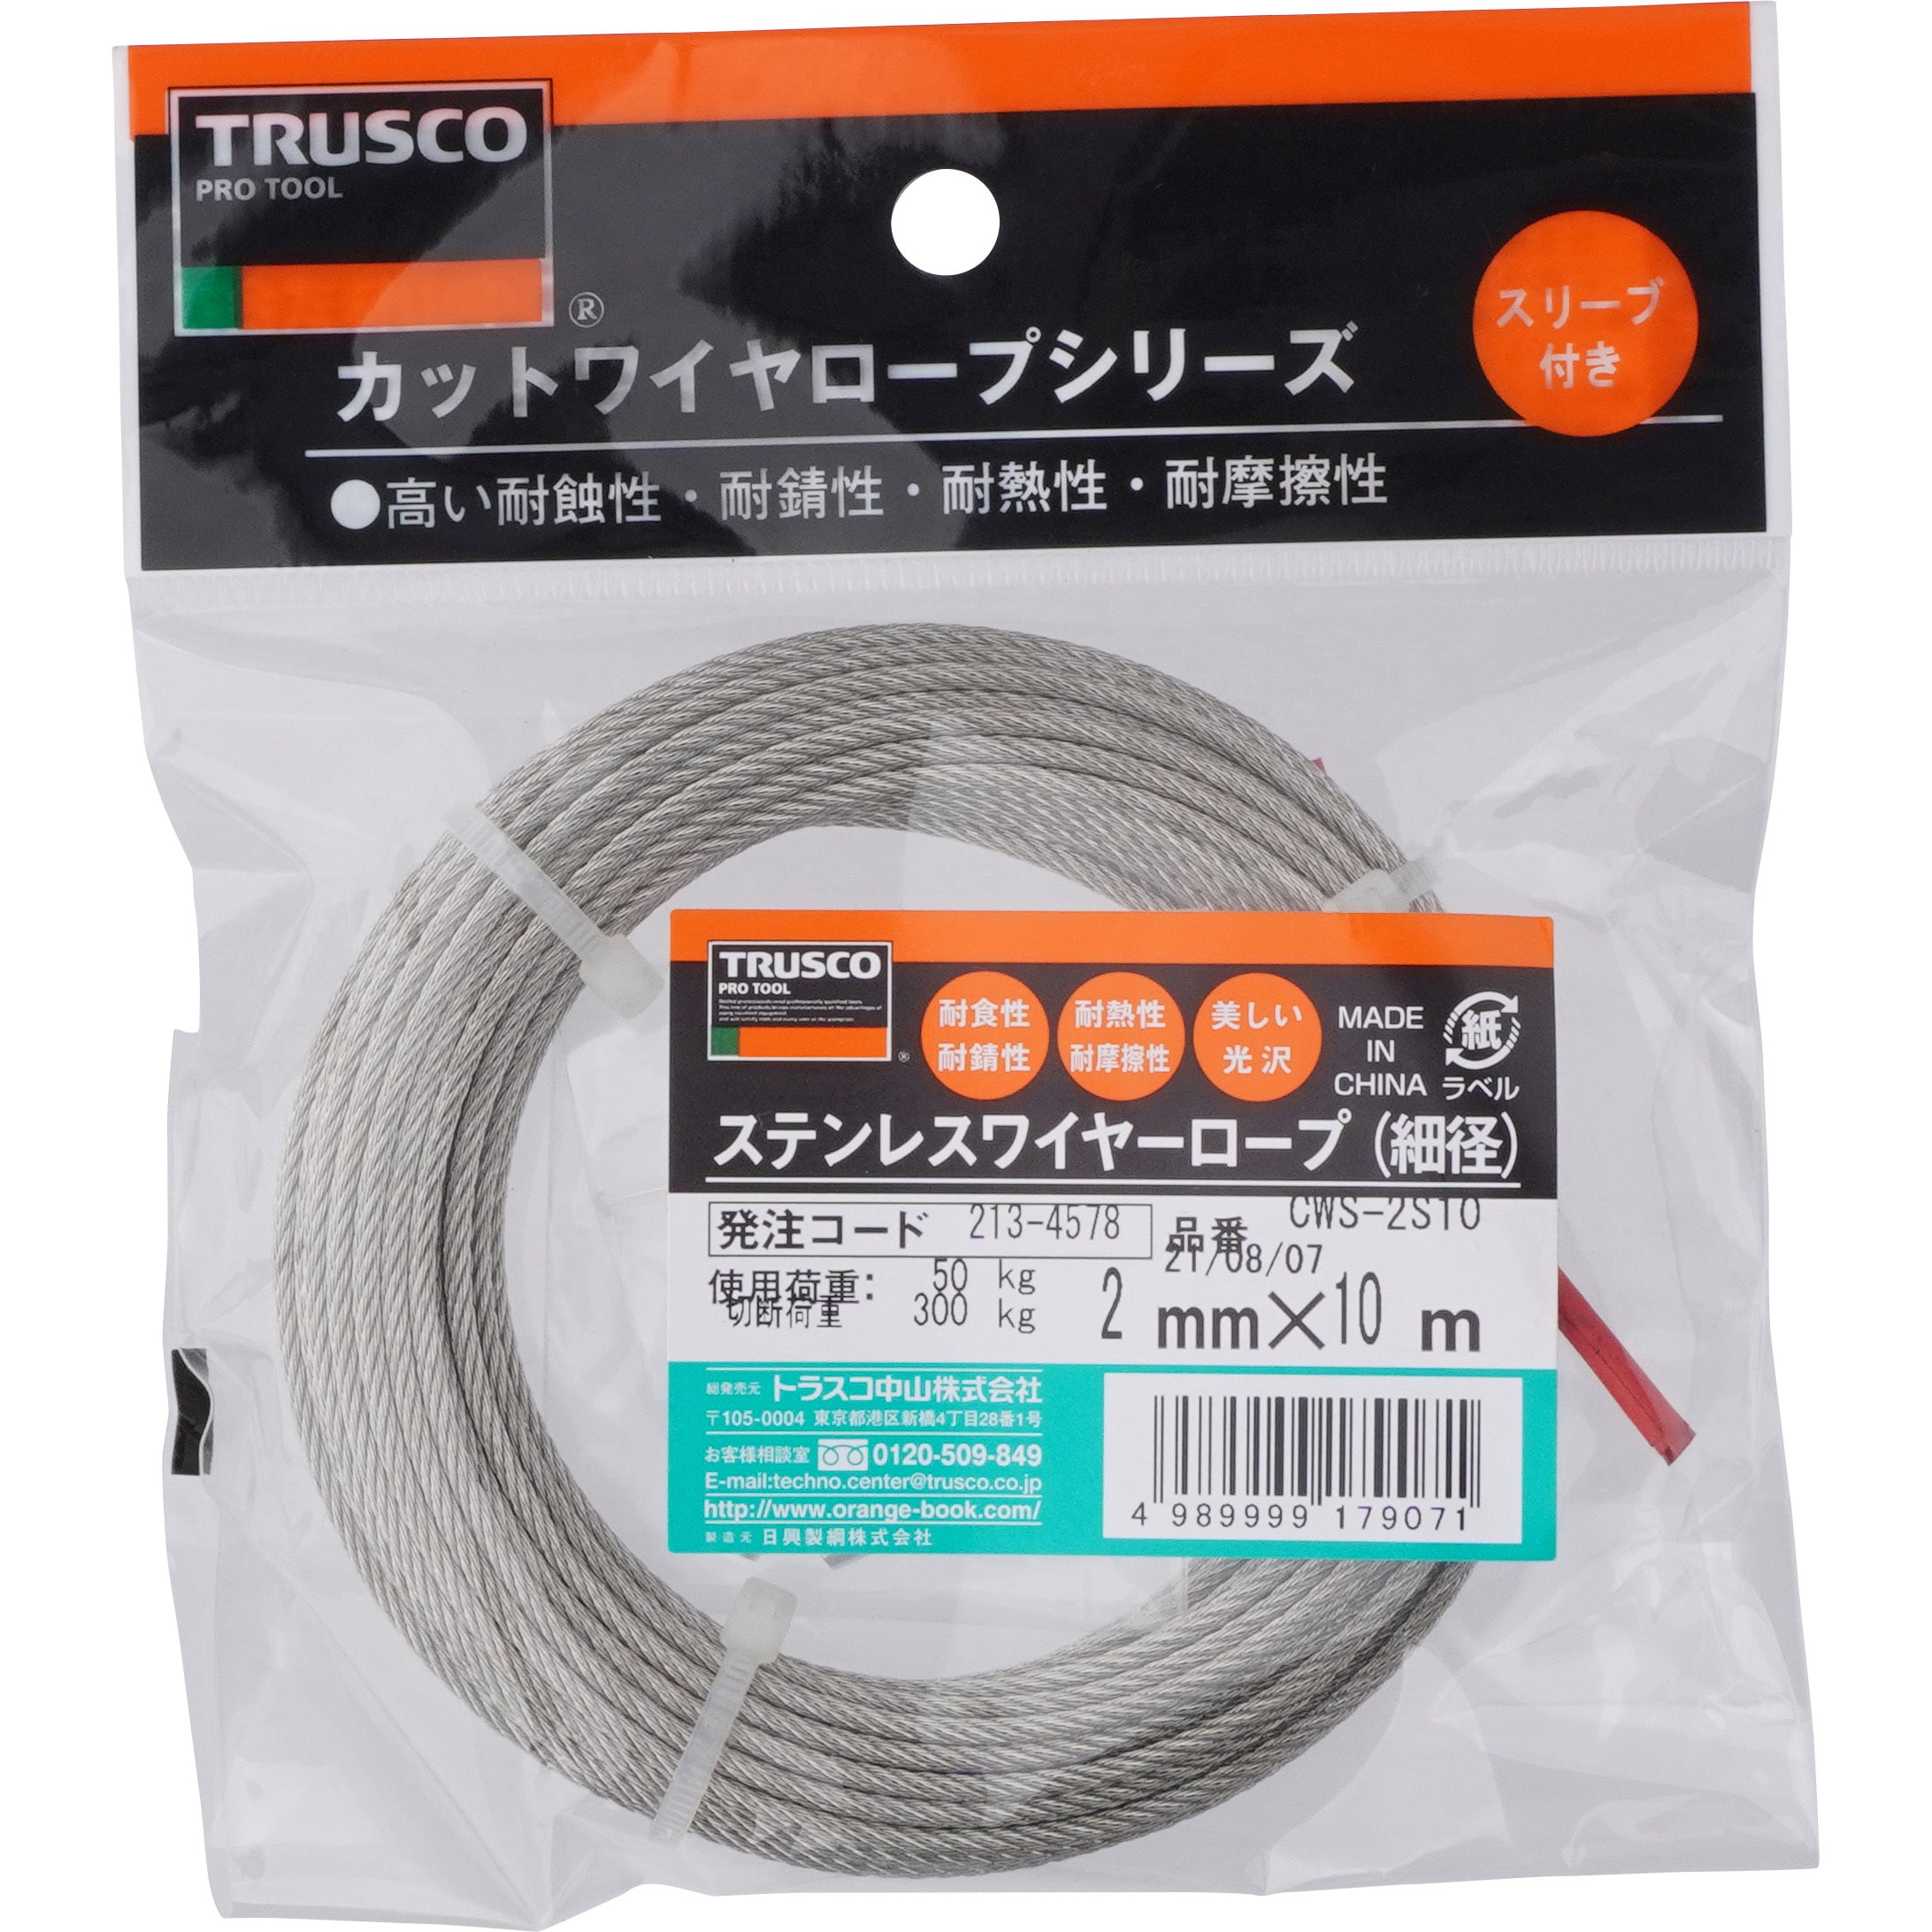 TRUSCO(トラスコ) メッキ付ワイヤロープ Φ6mm×100m CWM-6S100 - 1